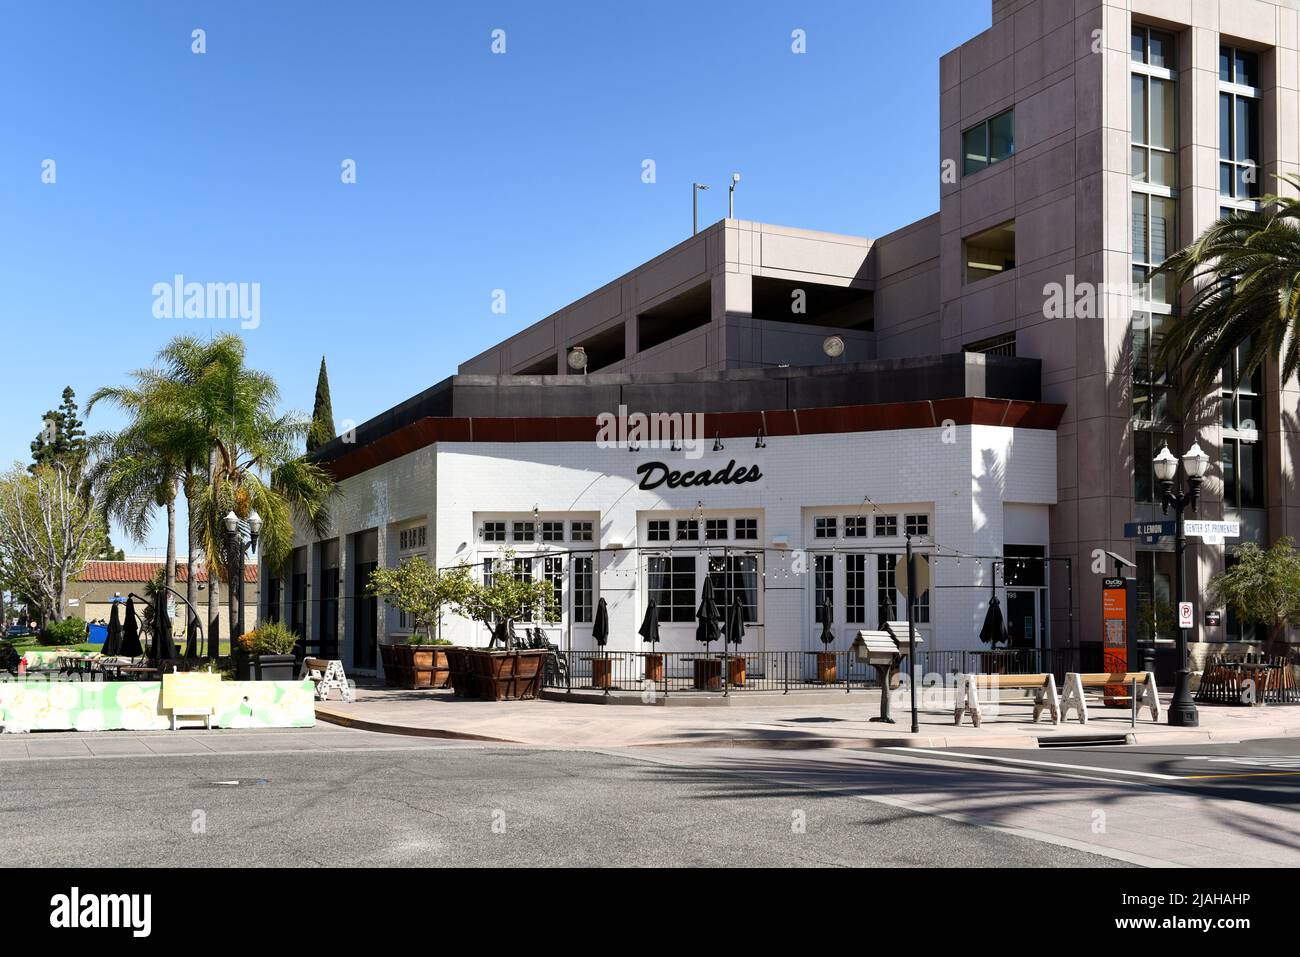 ANAHEIM, KALIFORNIEN - 31 MAR 2021: Dekaden und gutes Essen Dining Etablissements auf der Center Street Promenade im Ctr City Downtown District. Stockfoto